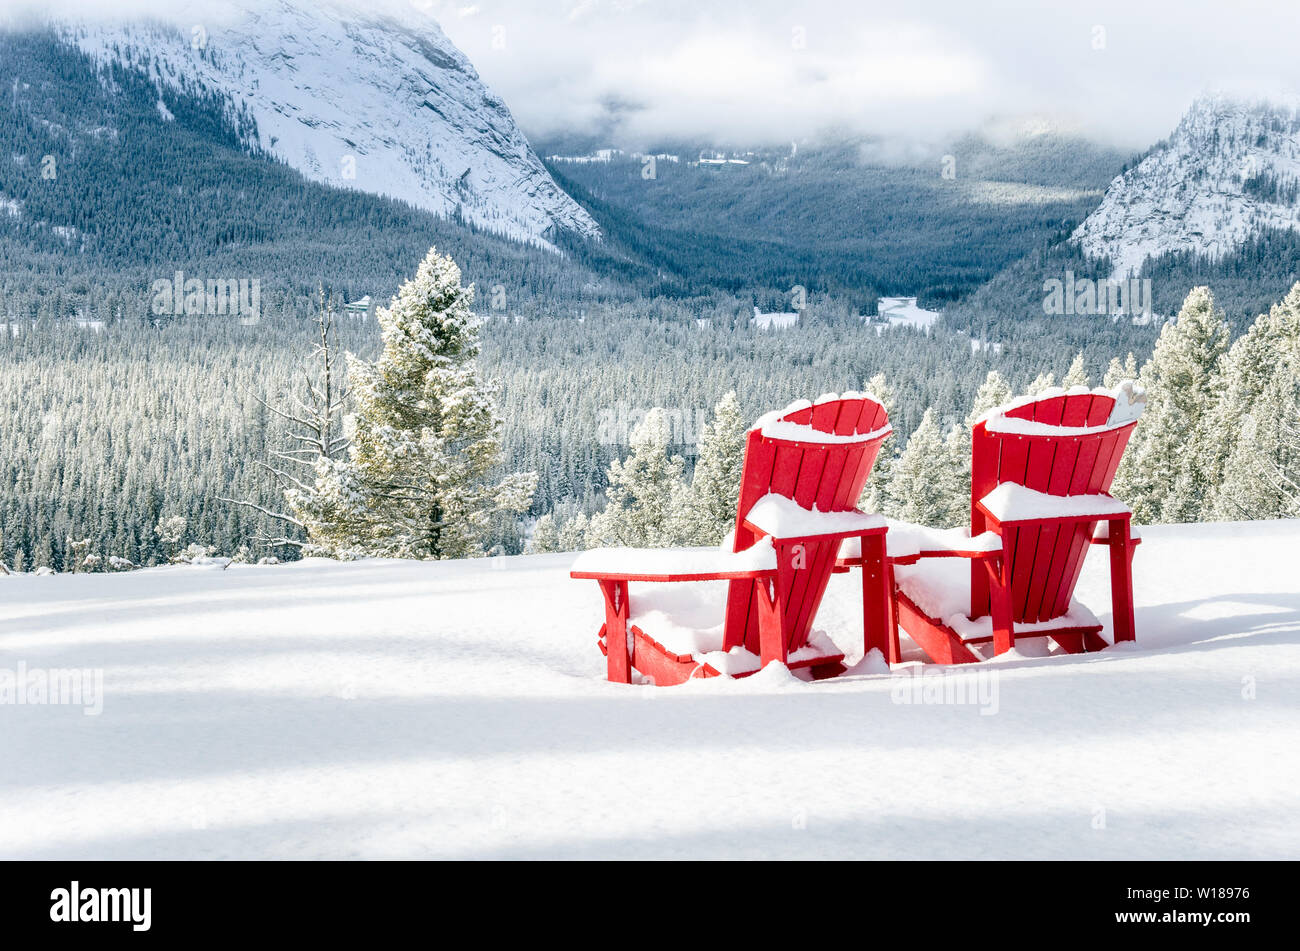 Schnee Rot Adirondack Stühle mit Blick auf eine gefrorene bewaldetes Tal an einem Wintertag. Banff National Park, AB, Kanada. Stockfoto